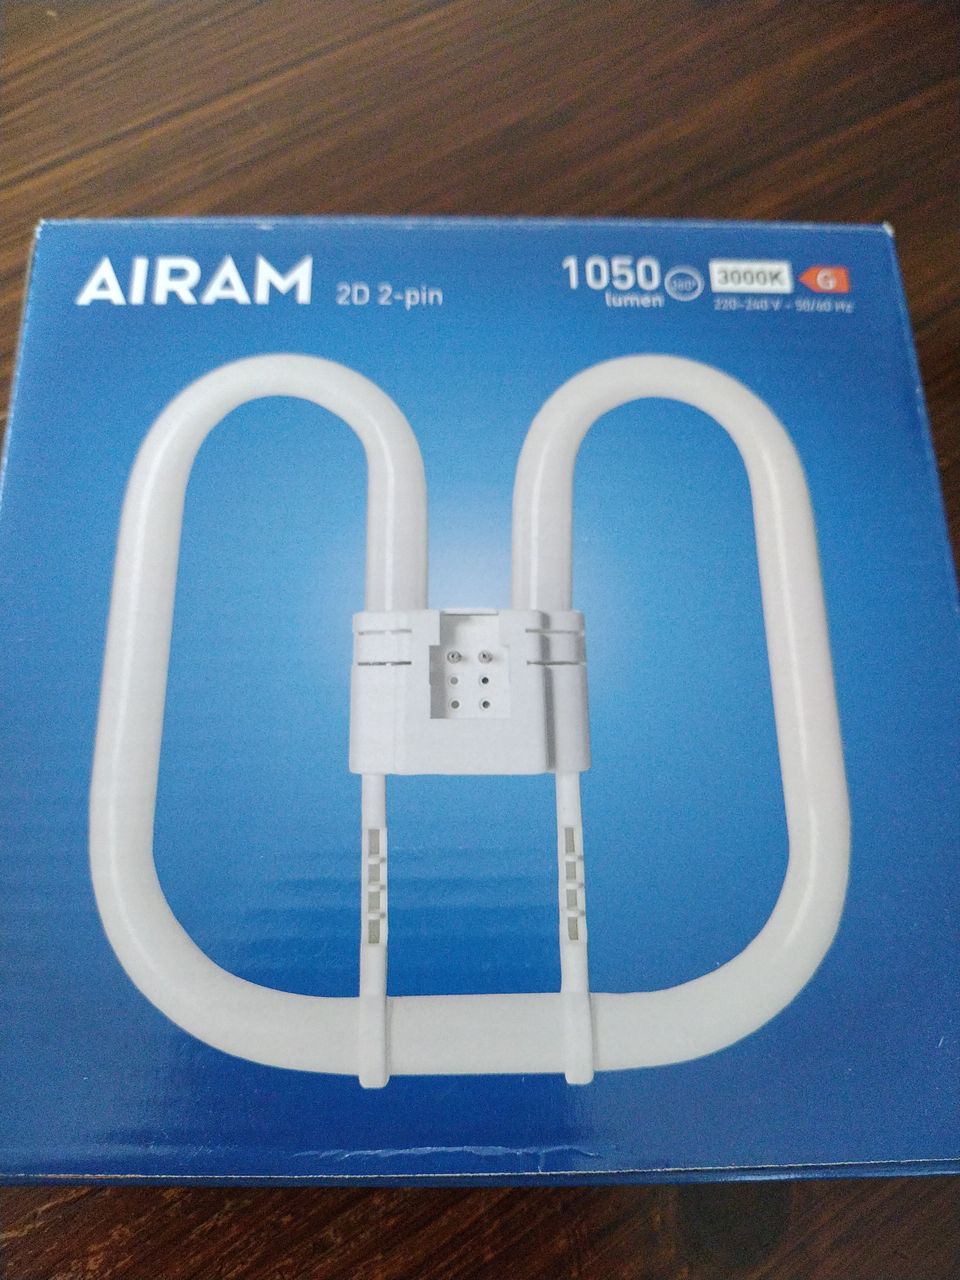 Airam 2D 2-pin